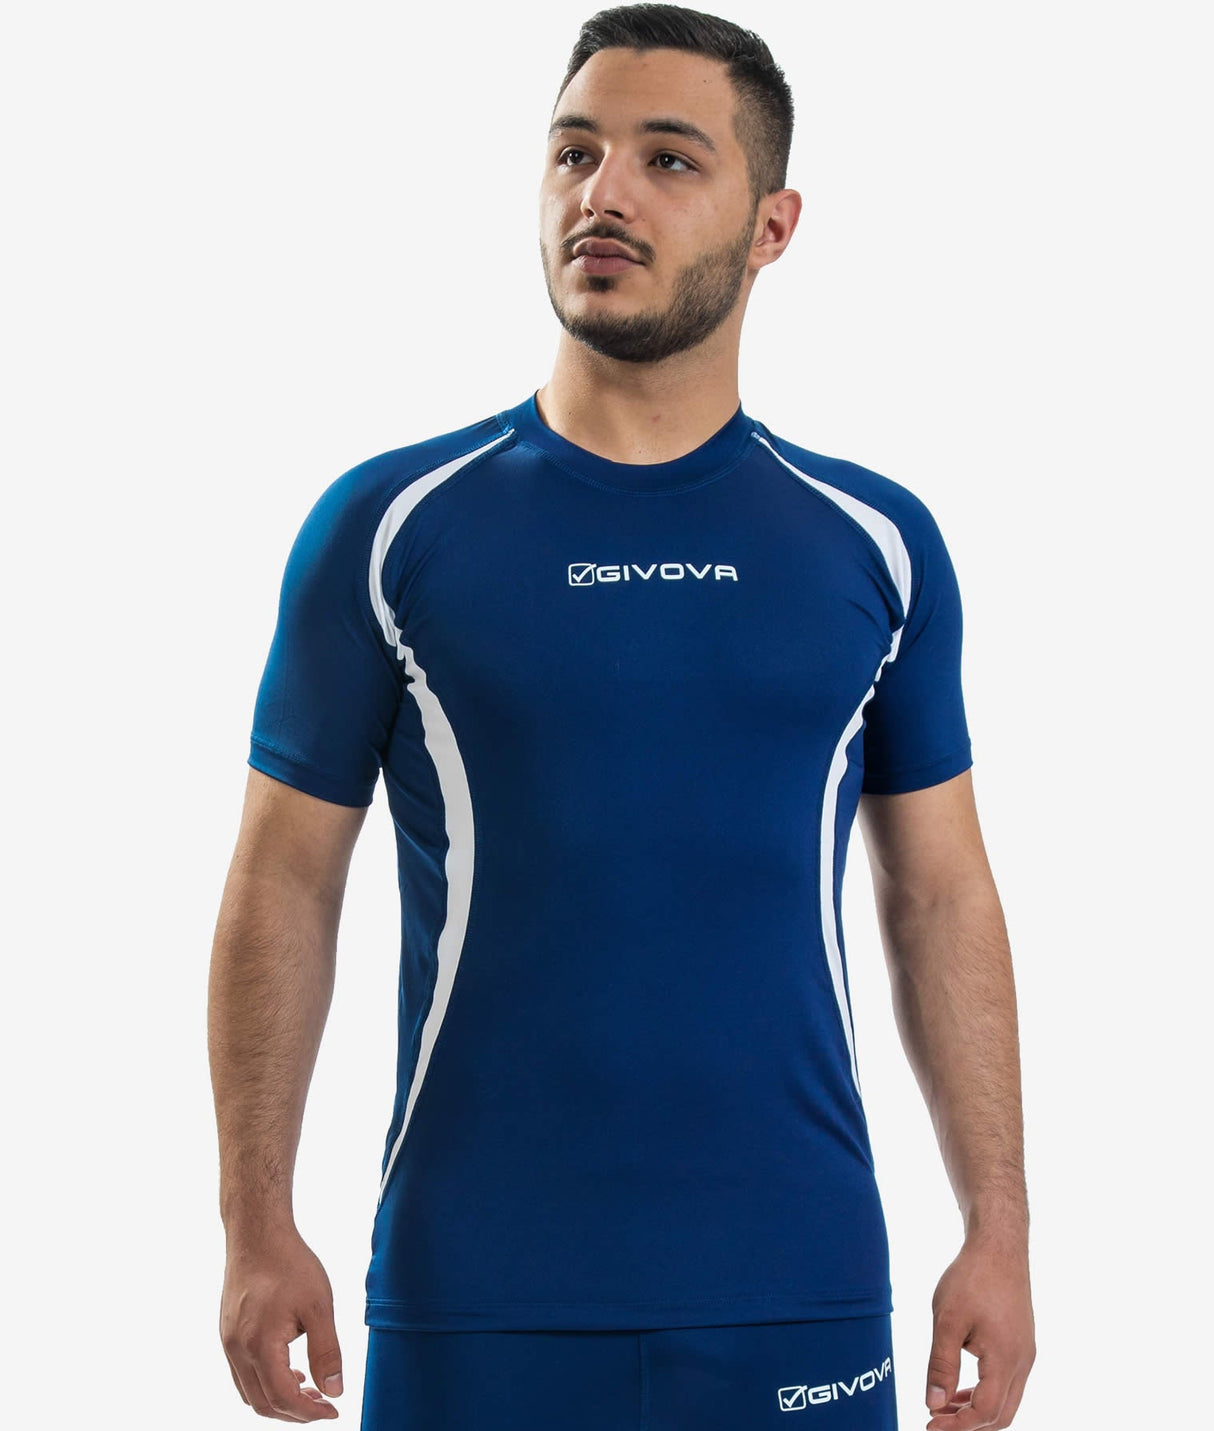 Givova Trainings-T-Shirt - blau